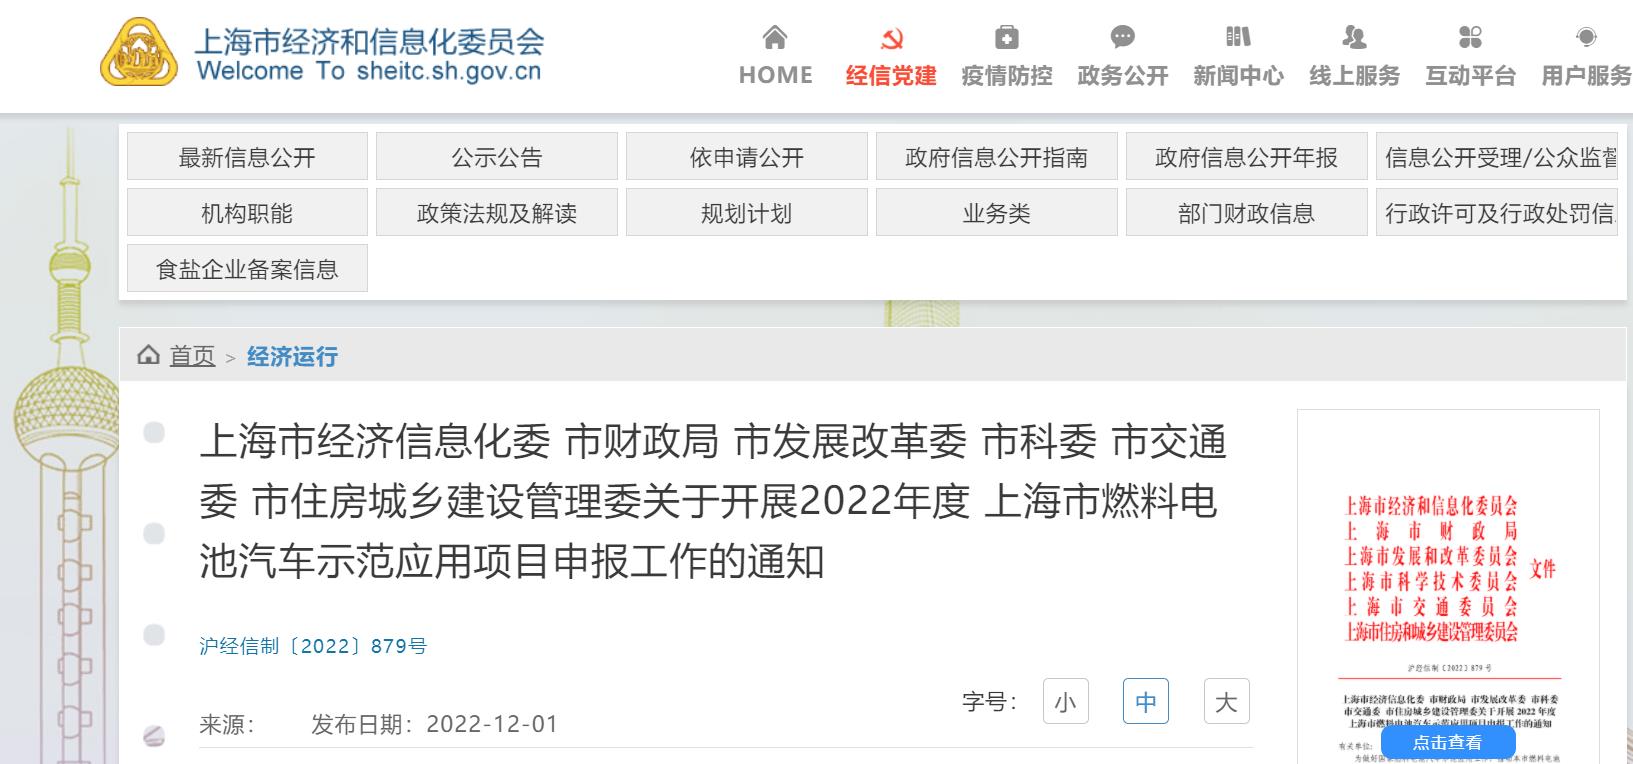 上海启动2022年度燃料电池汽车示范应用项目申报工作